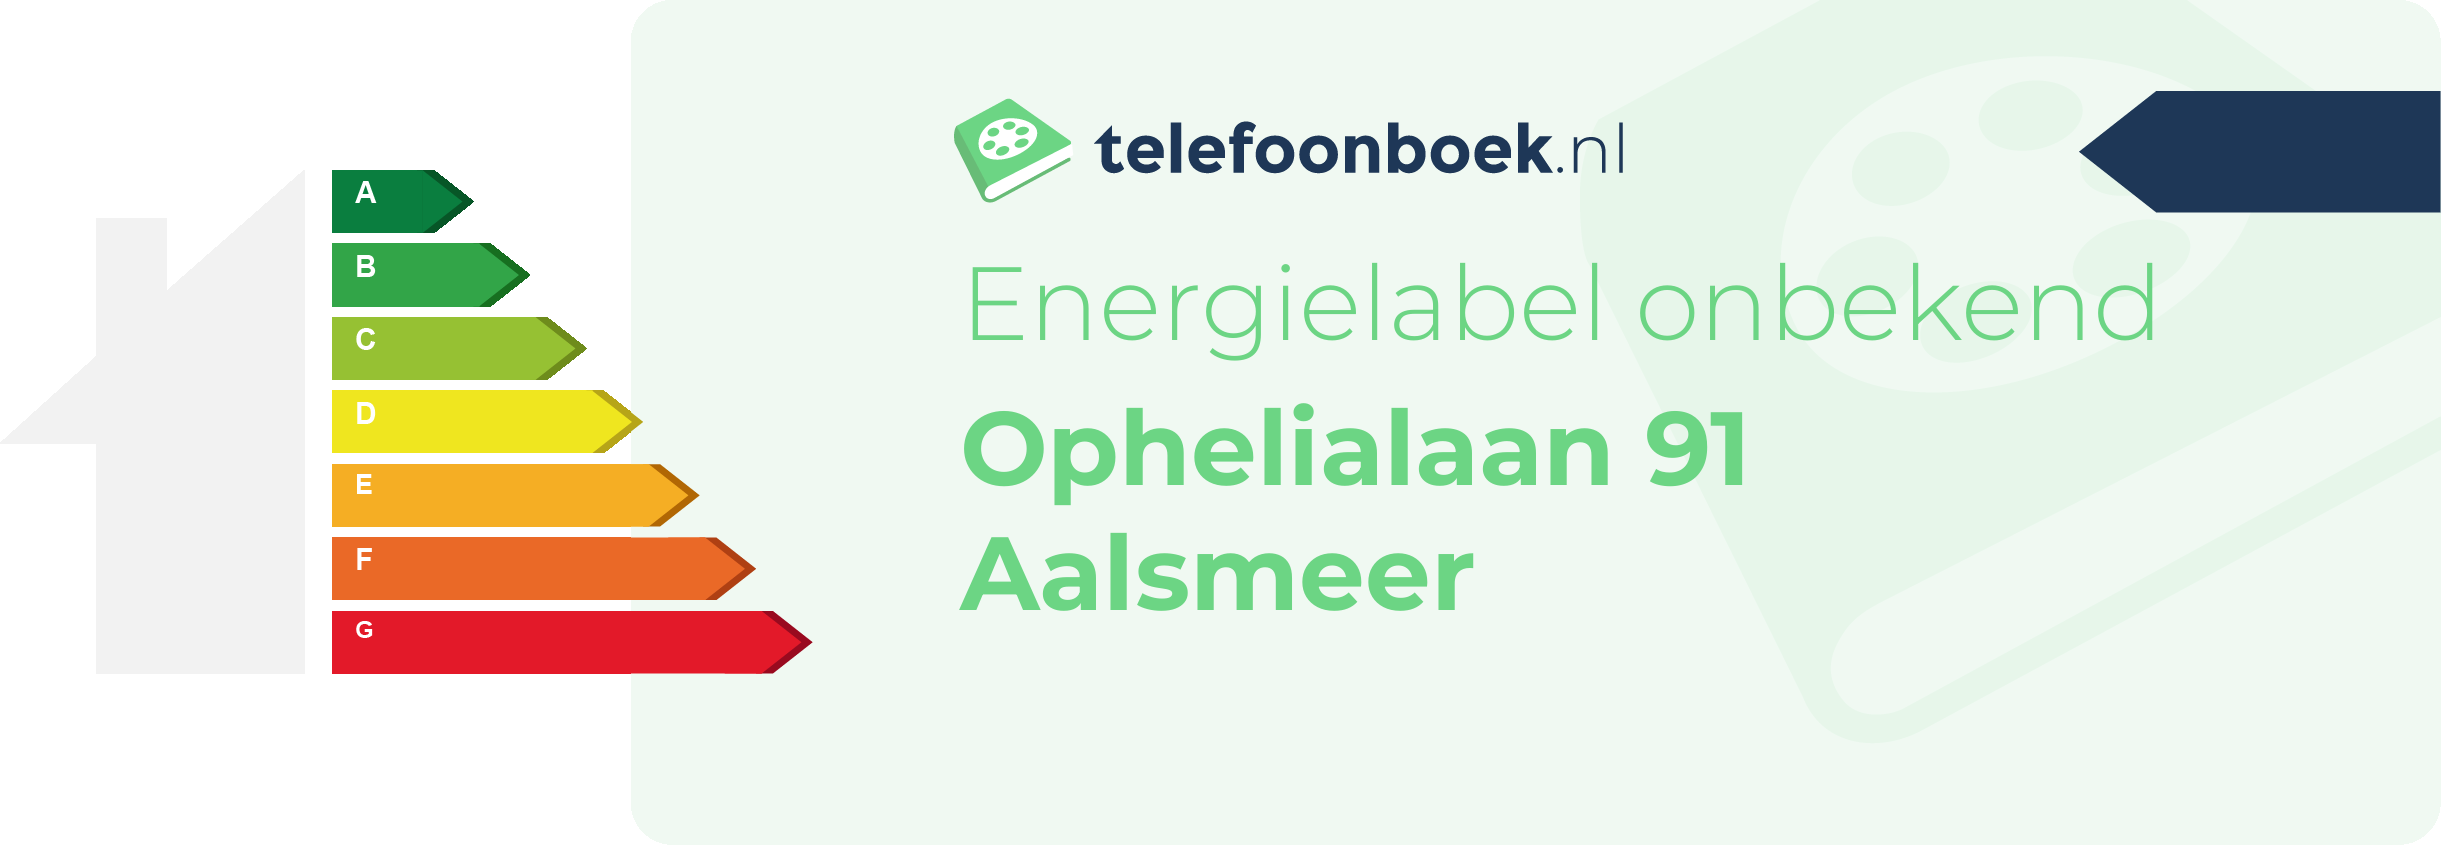 Energielabel Ophelialaan 91 Aalsmeer